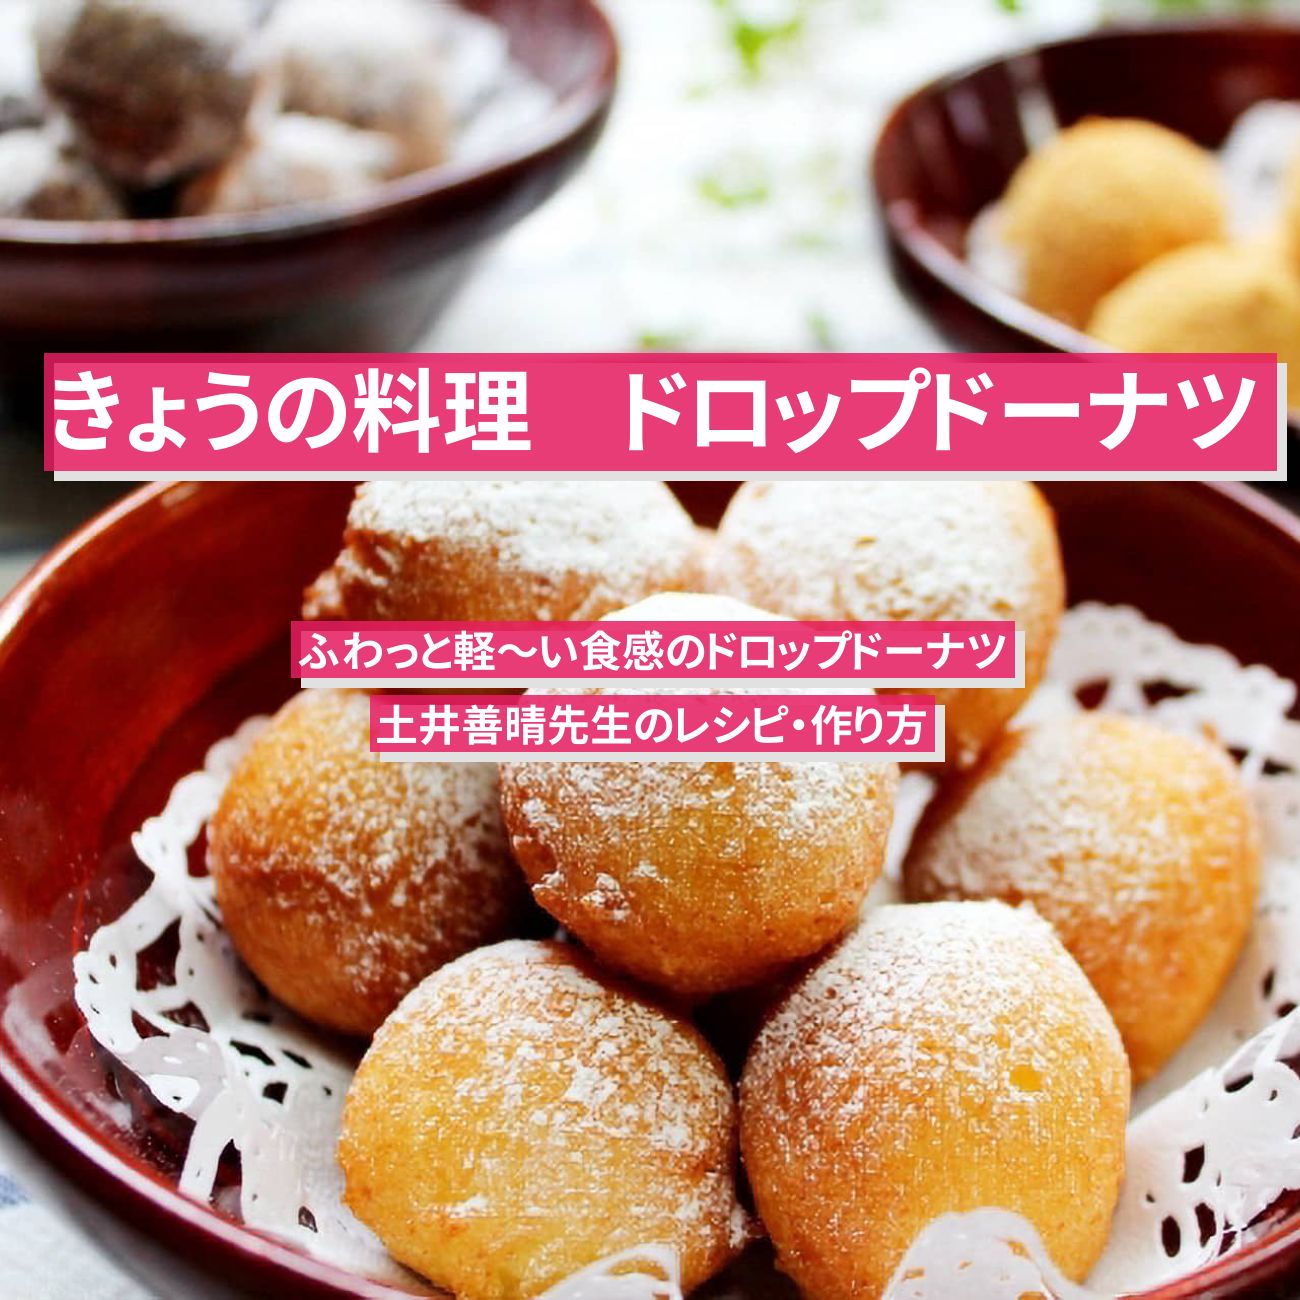 【きょうの料理】『ドロップドーナツ』土井善晴先生のレシピ・作り方